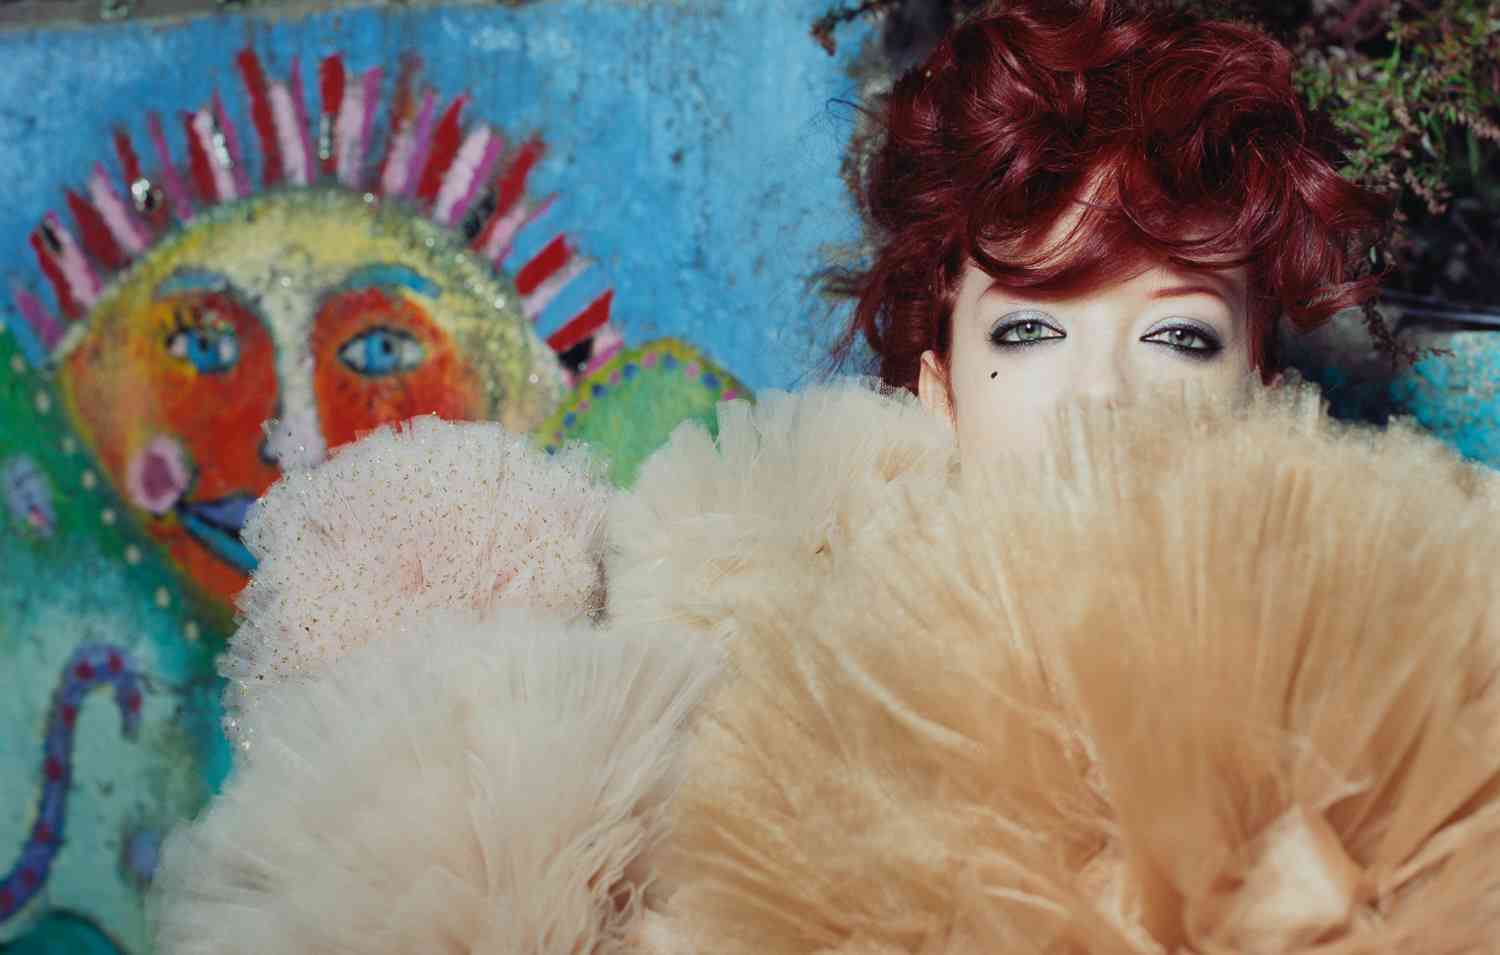 Shirley Manson shot by world-class fashion photographer Warwick Saint